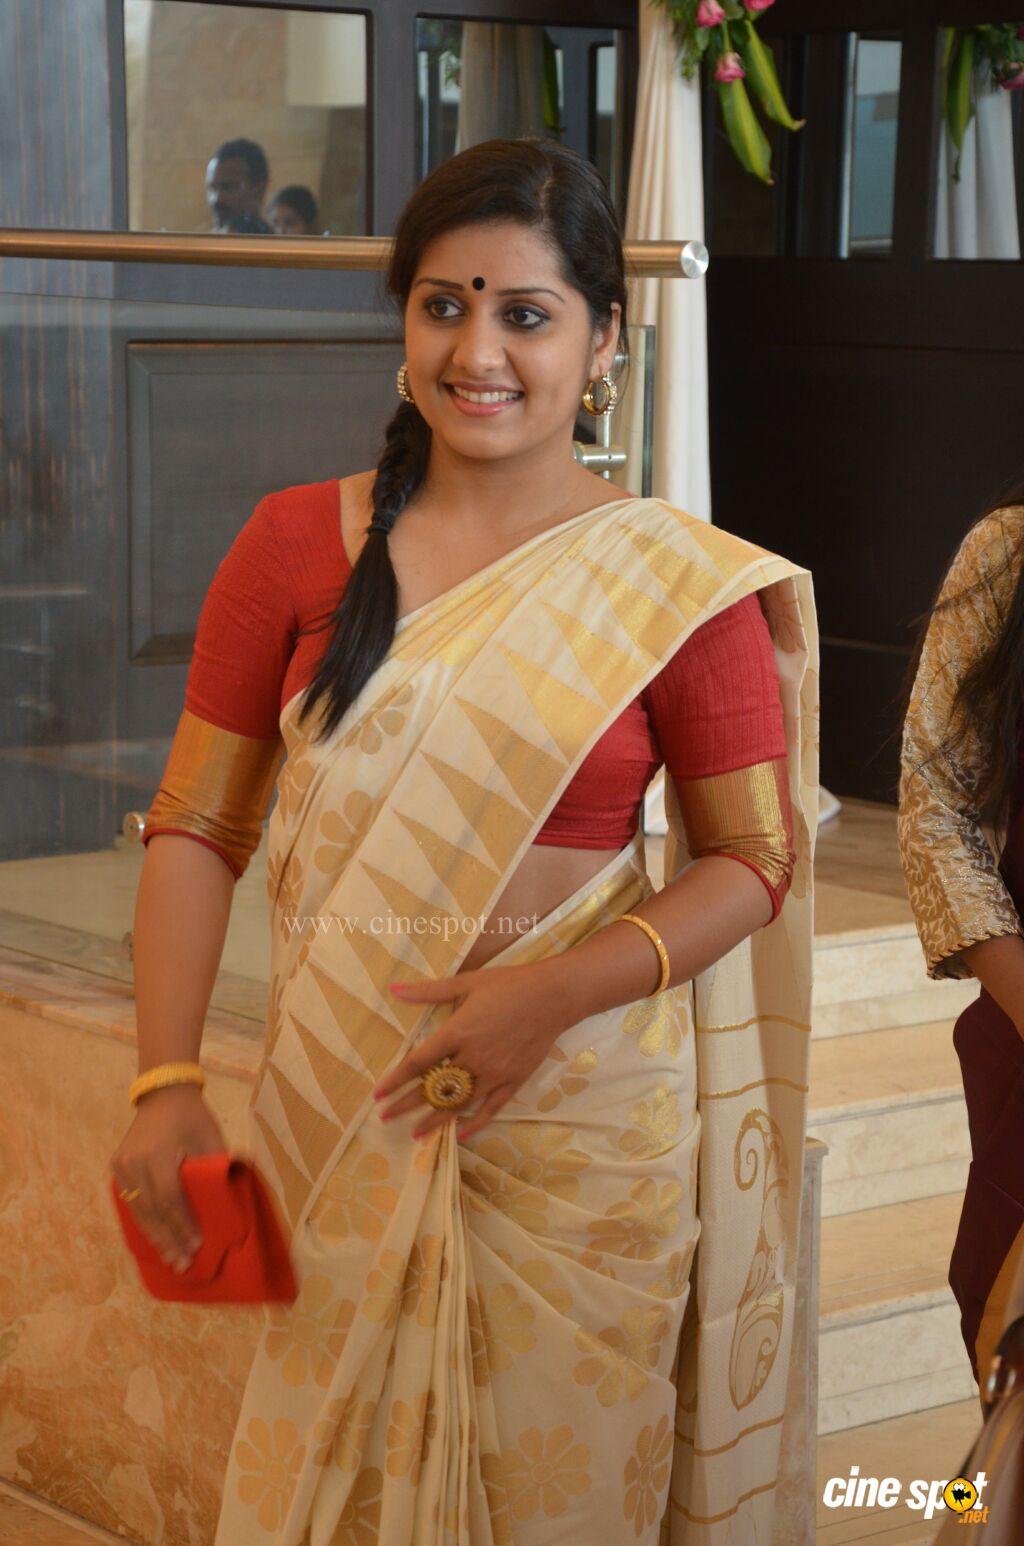 Sarayu Malayalam actress Image (19)